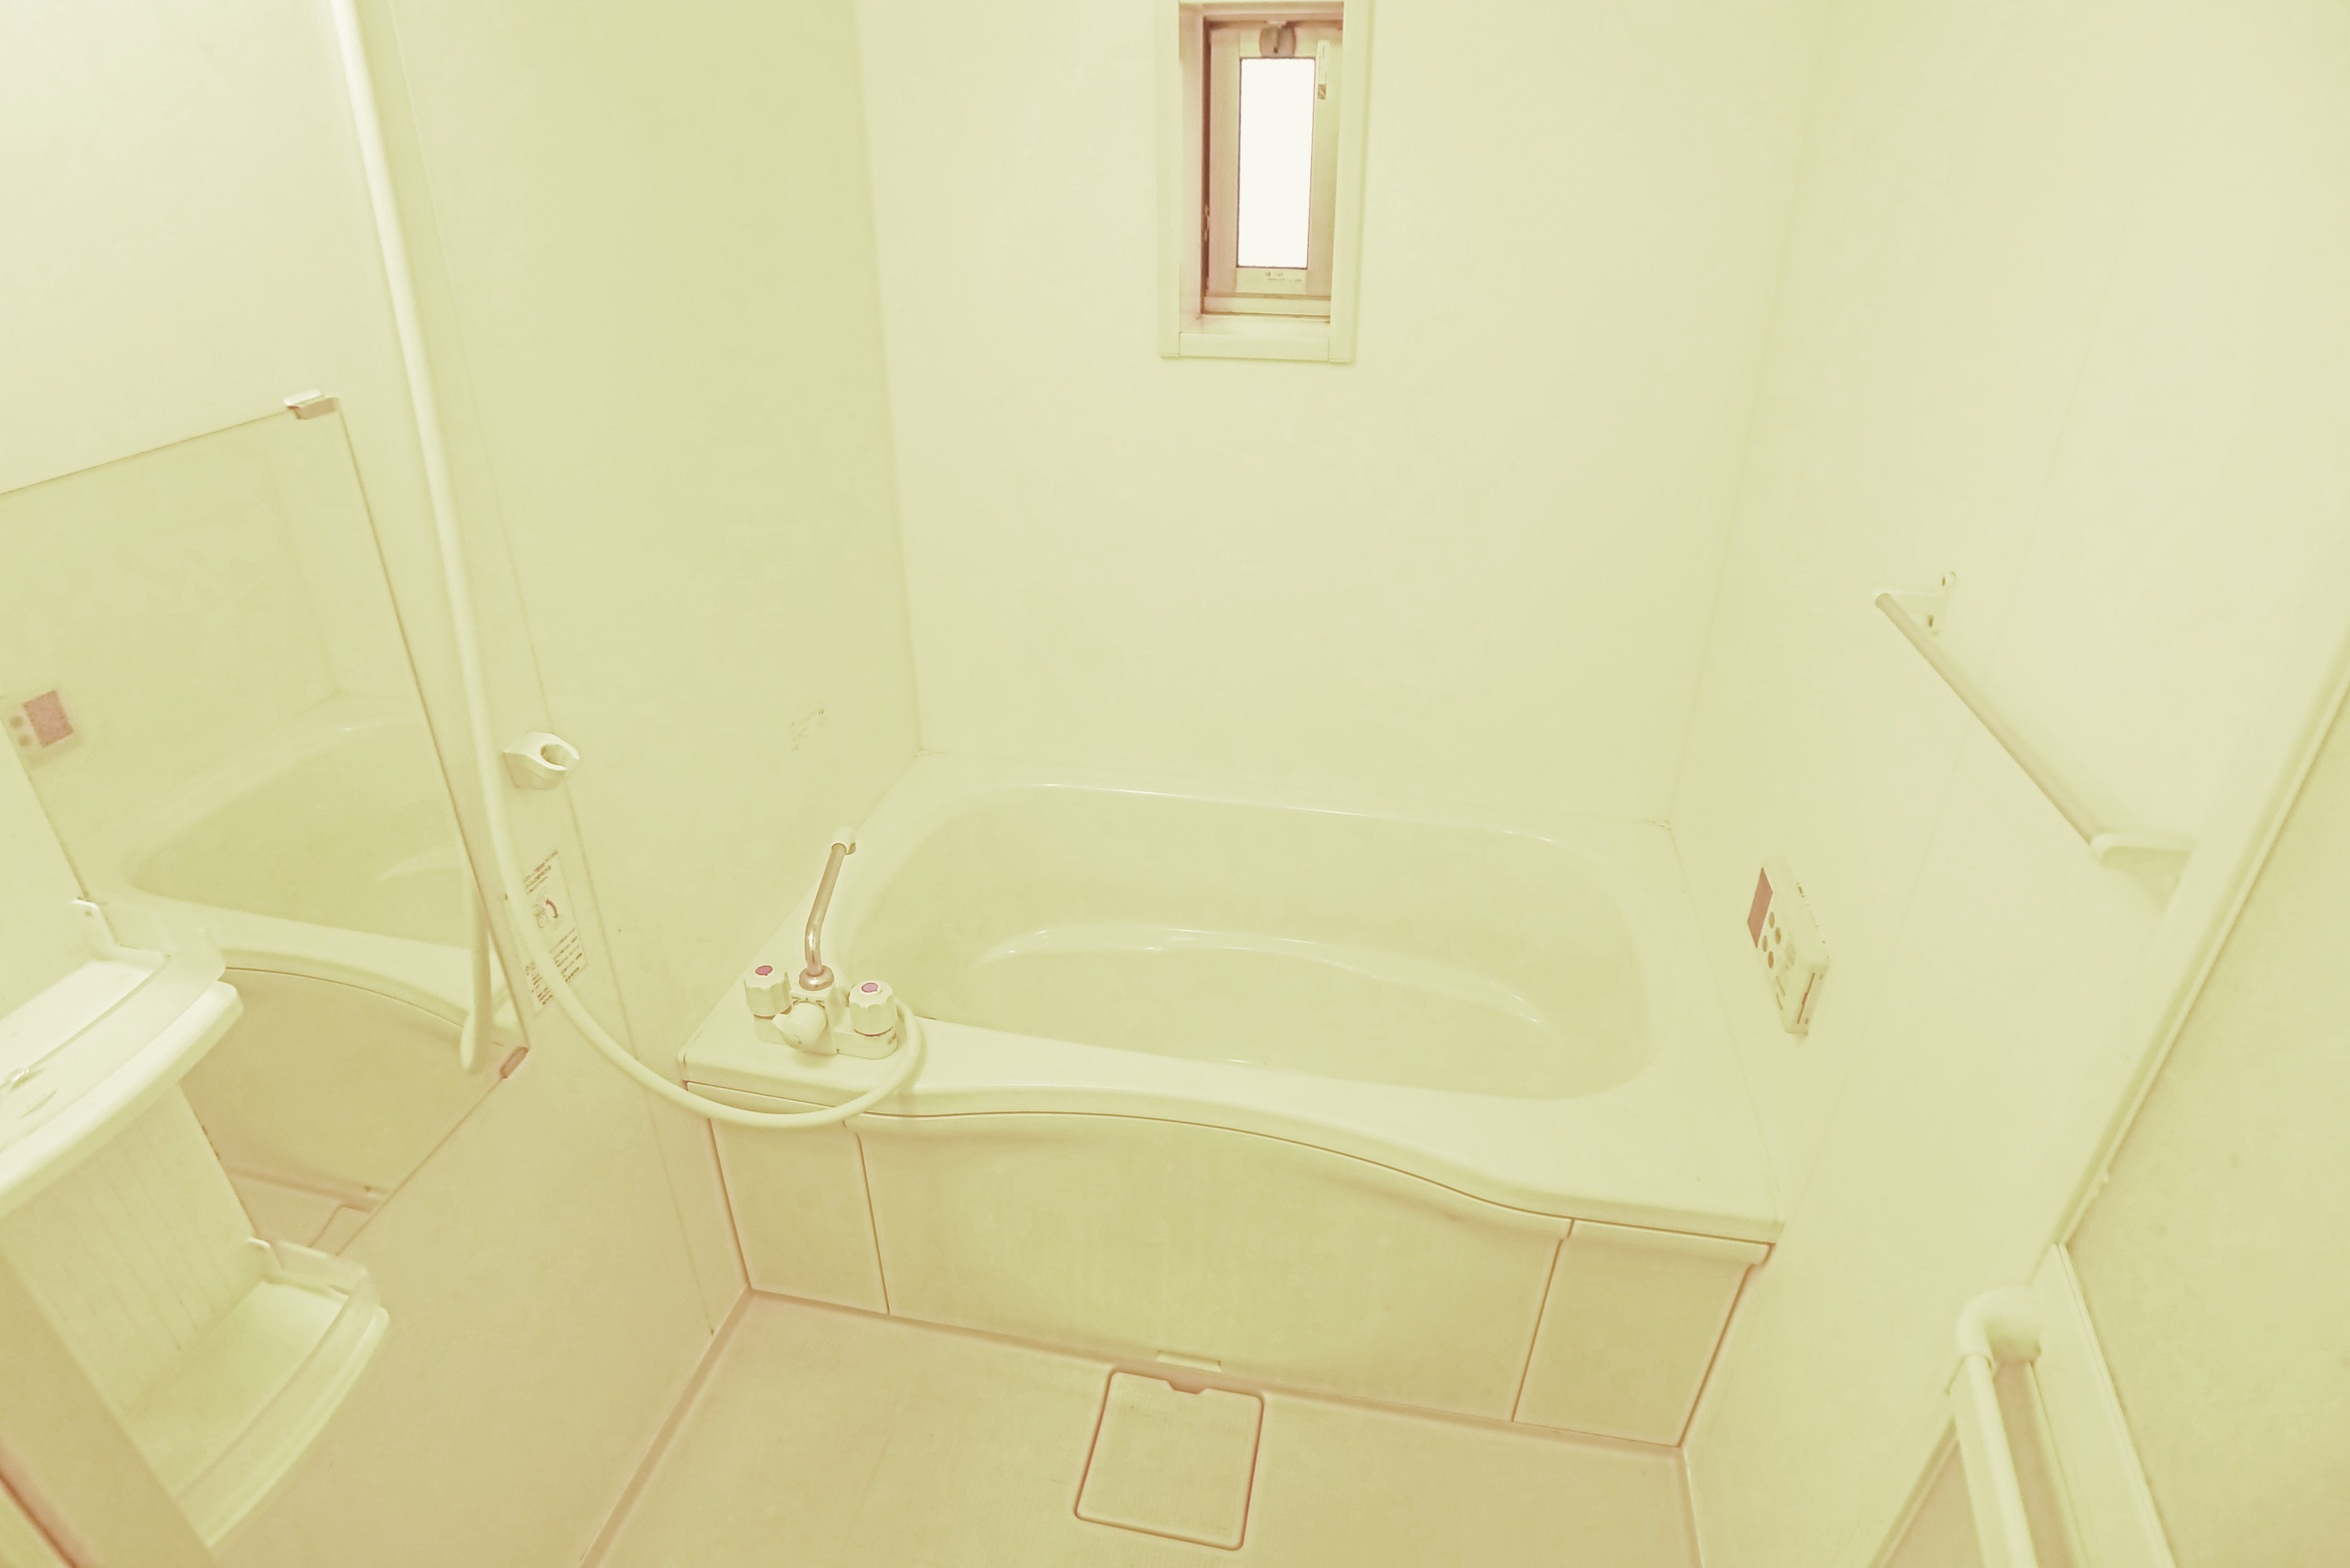 Bath. Bathroom add 焚給 hot water type of bath small window with a propane gas system